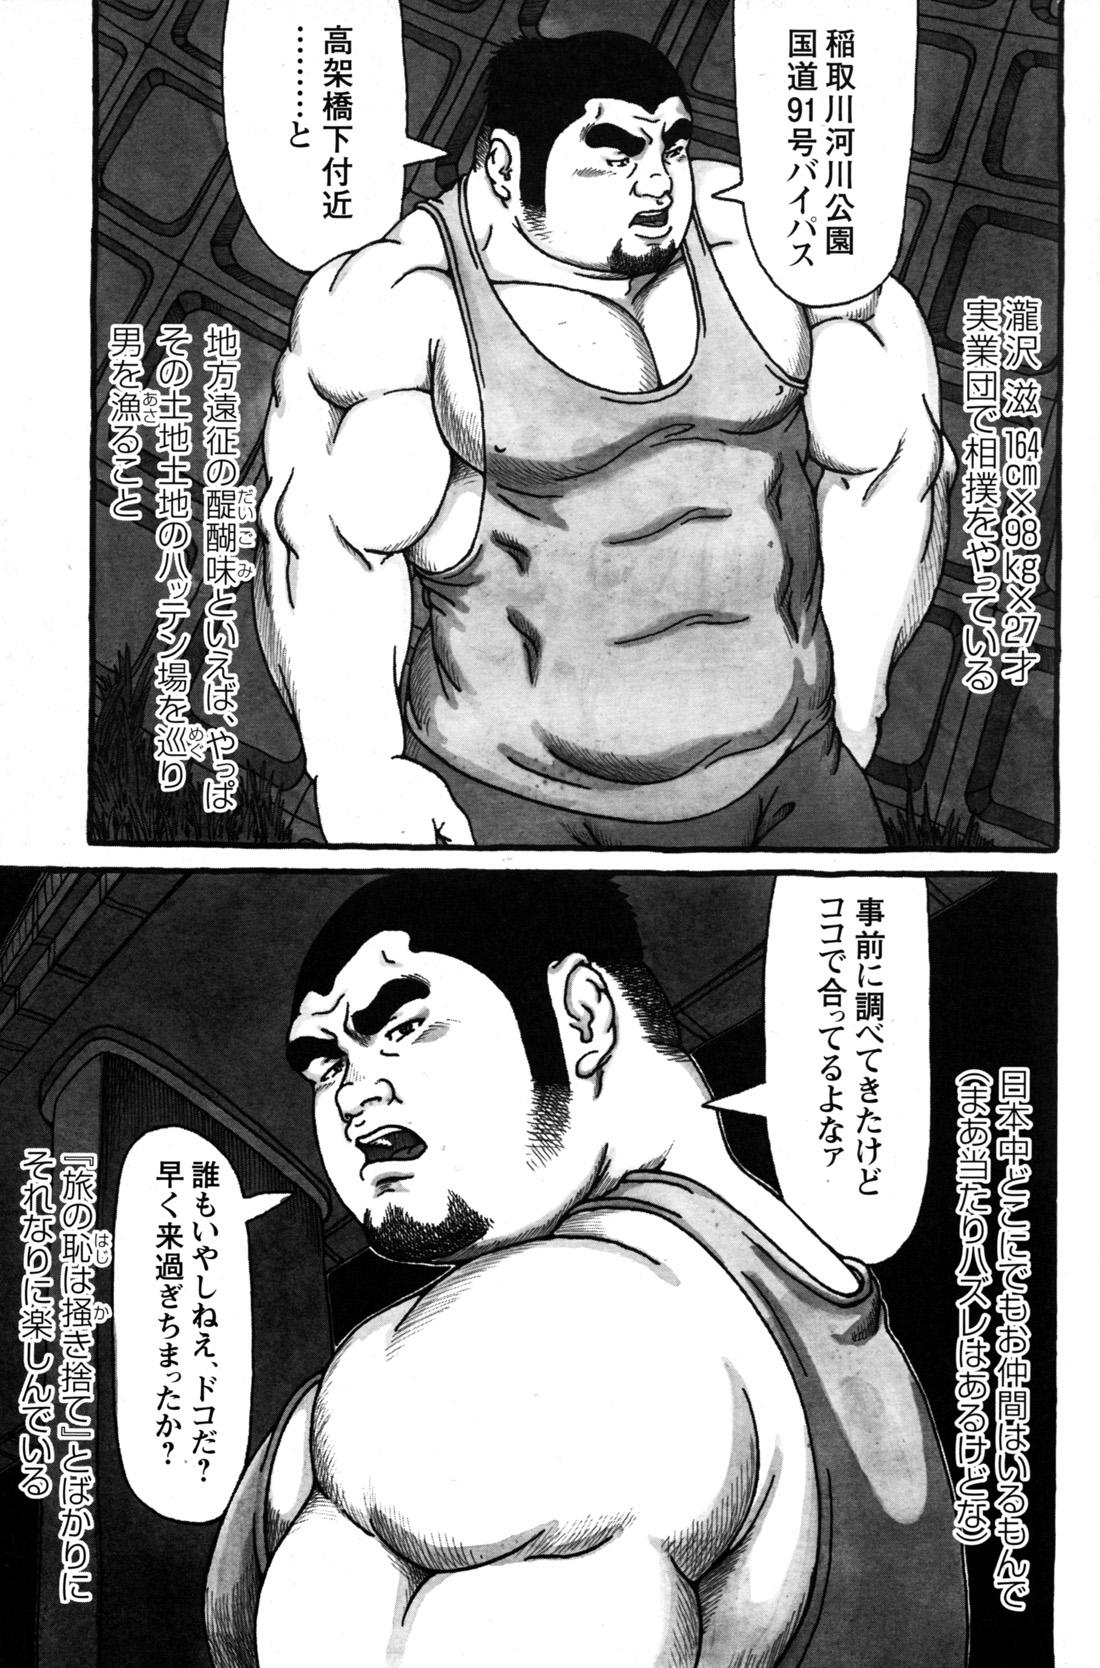 Comic G-men Gaho No.09 Gacchibi Zeme 146